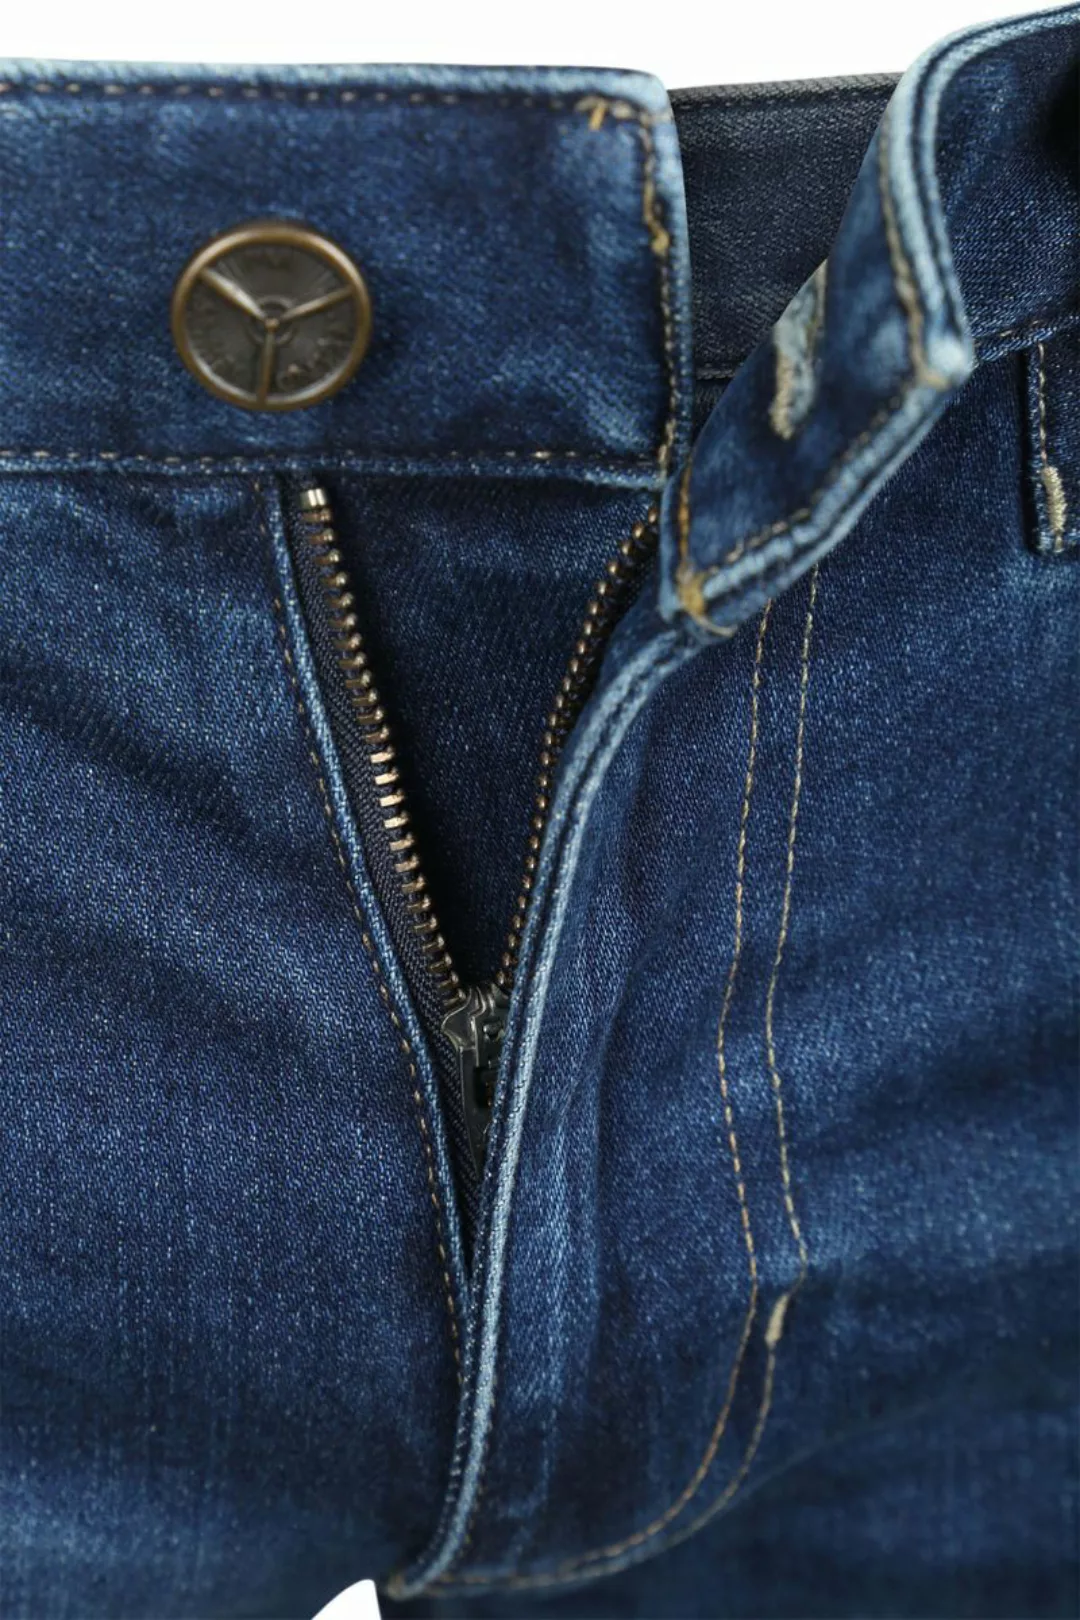 PME Legend Commander 3.0 Jeans Blau TBM - Größe W 34 - L 30 günstig online kaufen